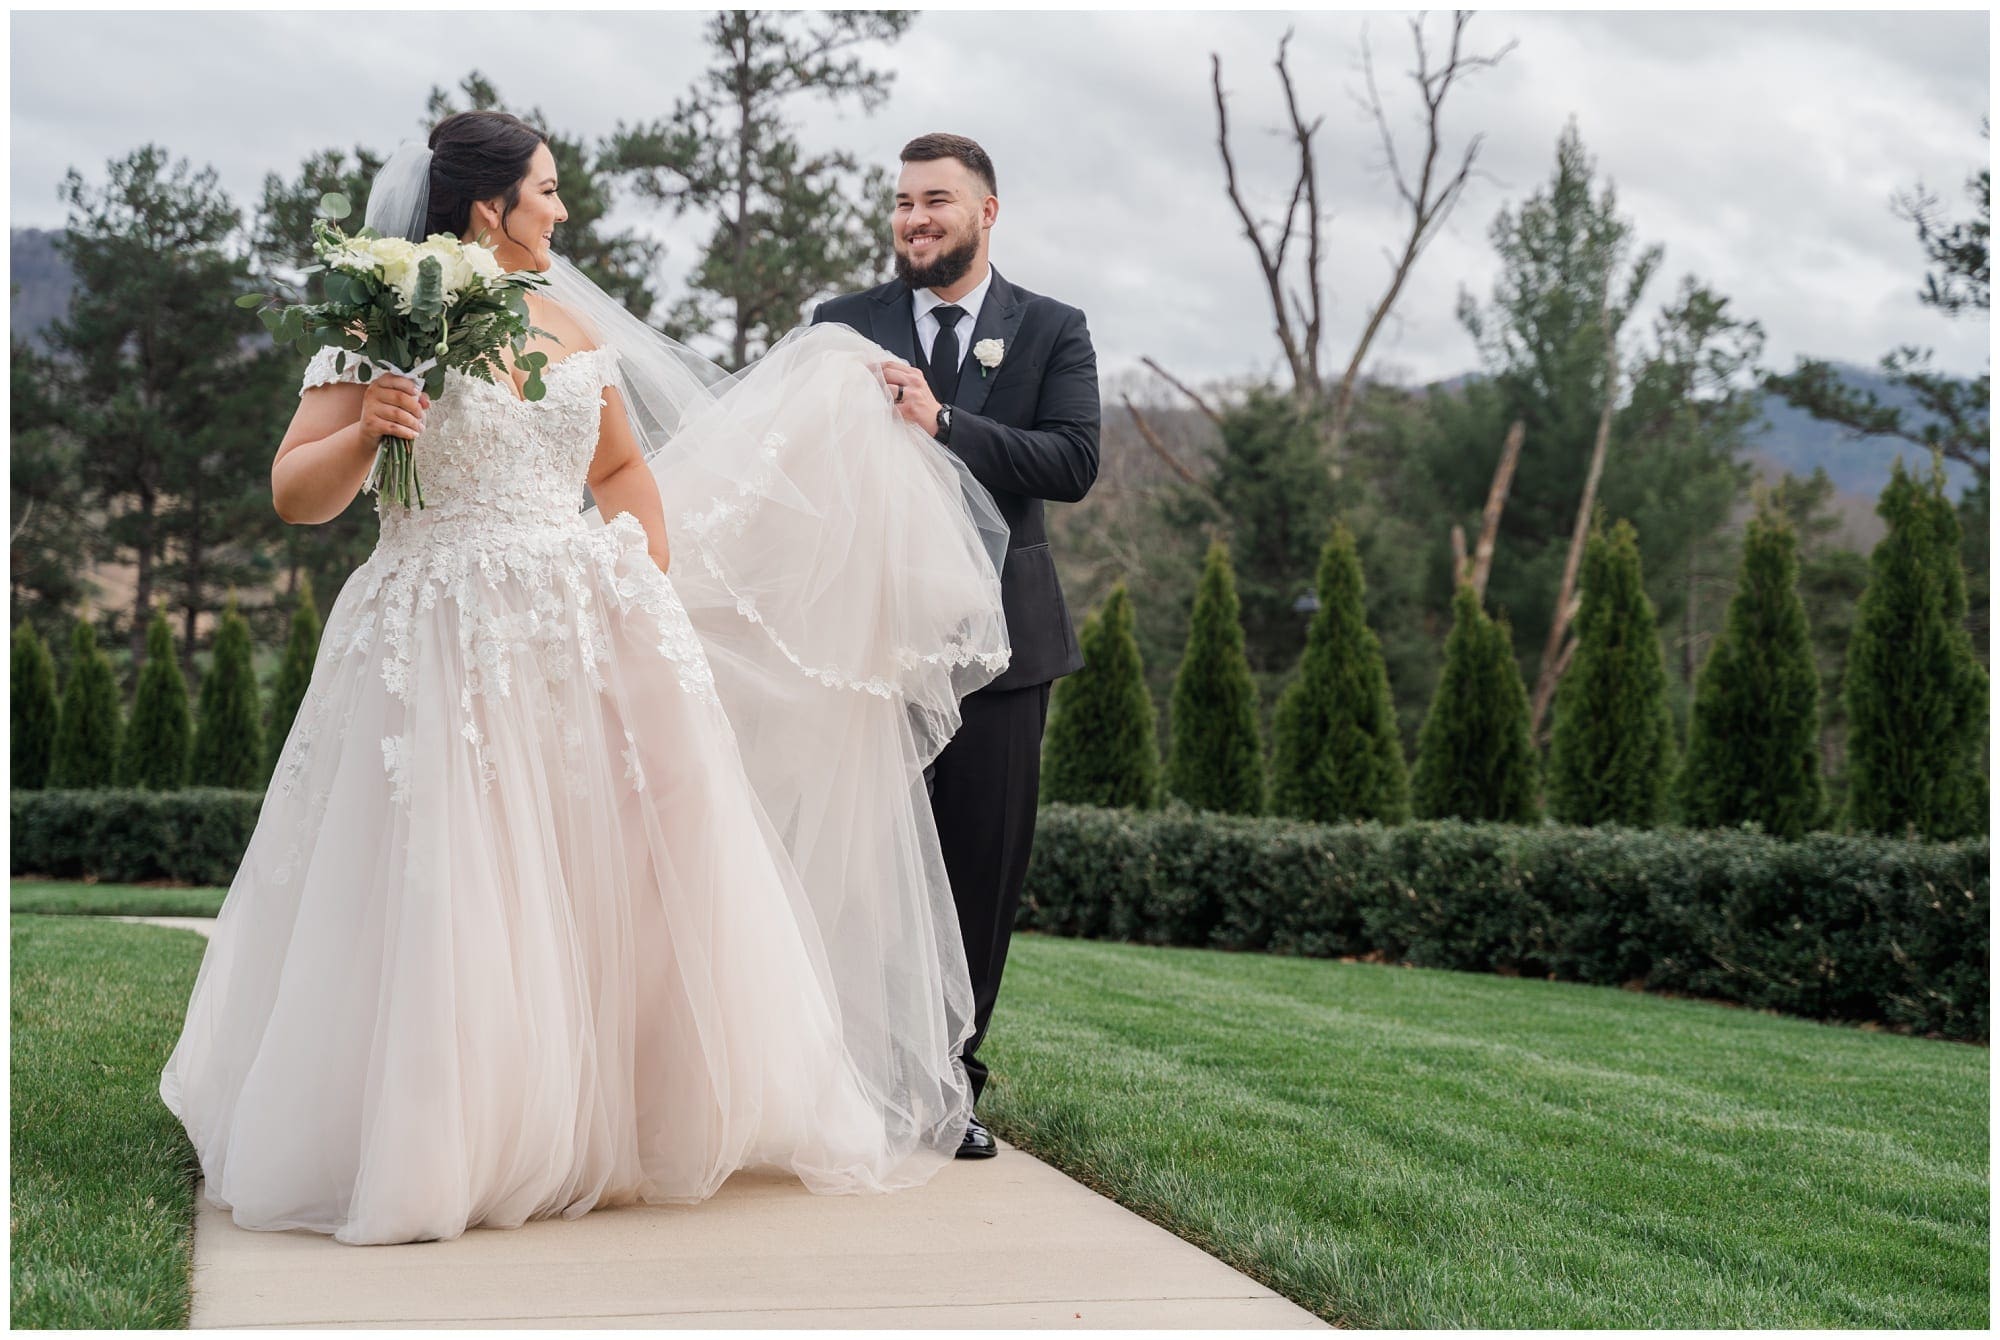 goom helps bride with her dress